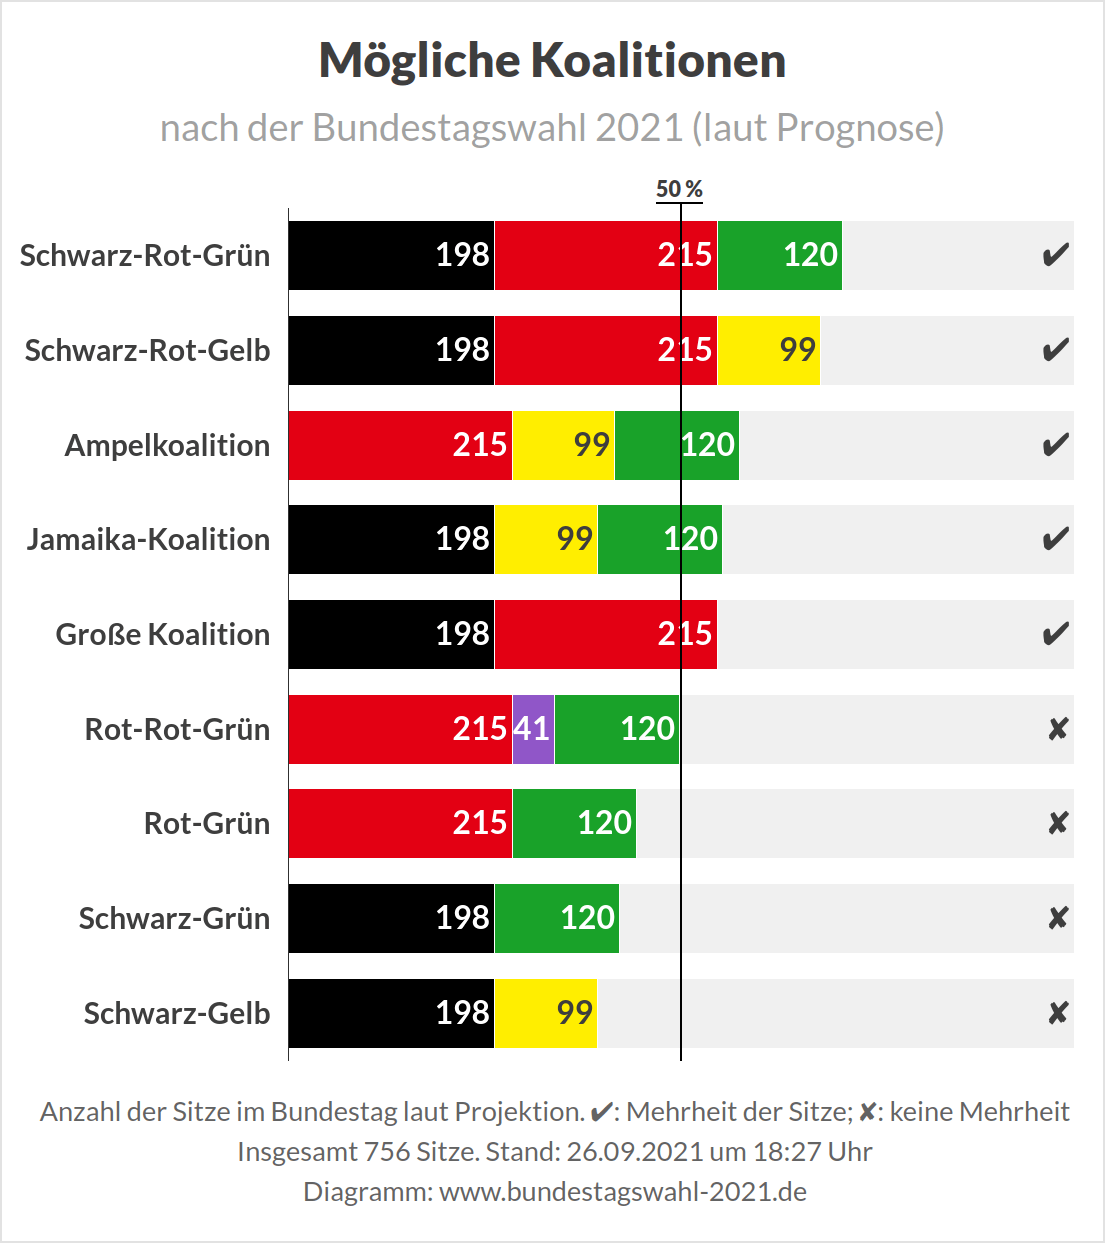 Bundestagswahl 2021 - Prognose Mögliche Koalitionen